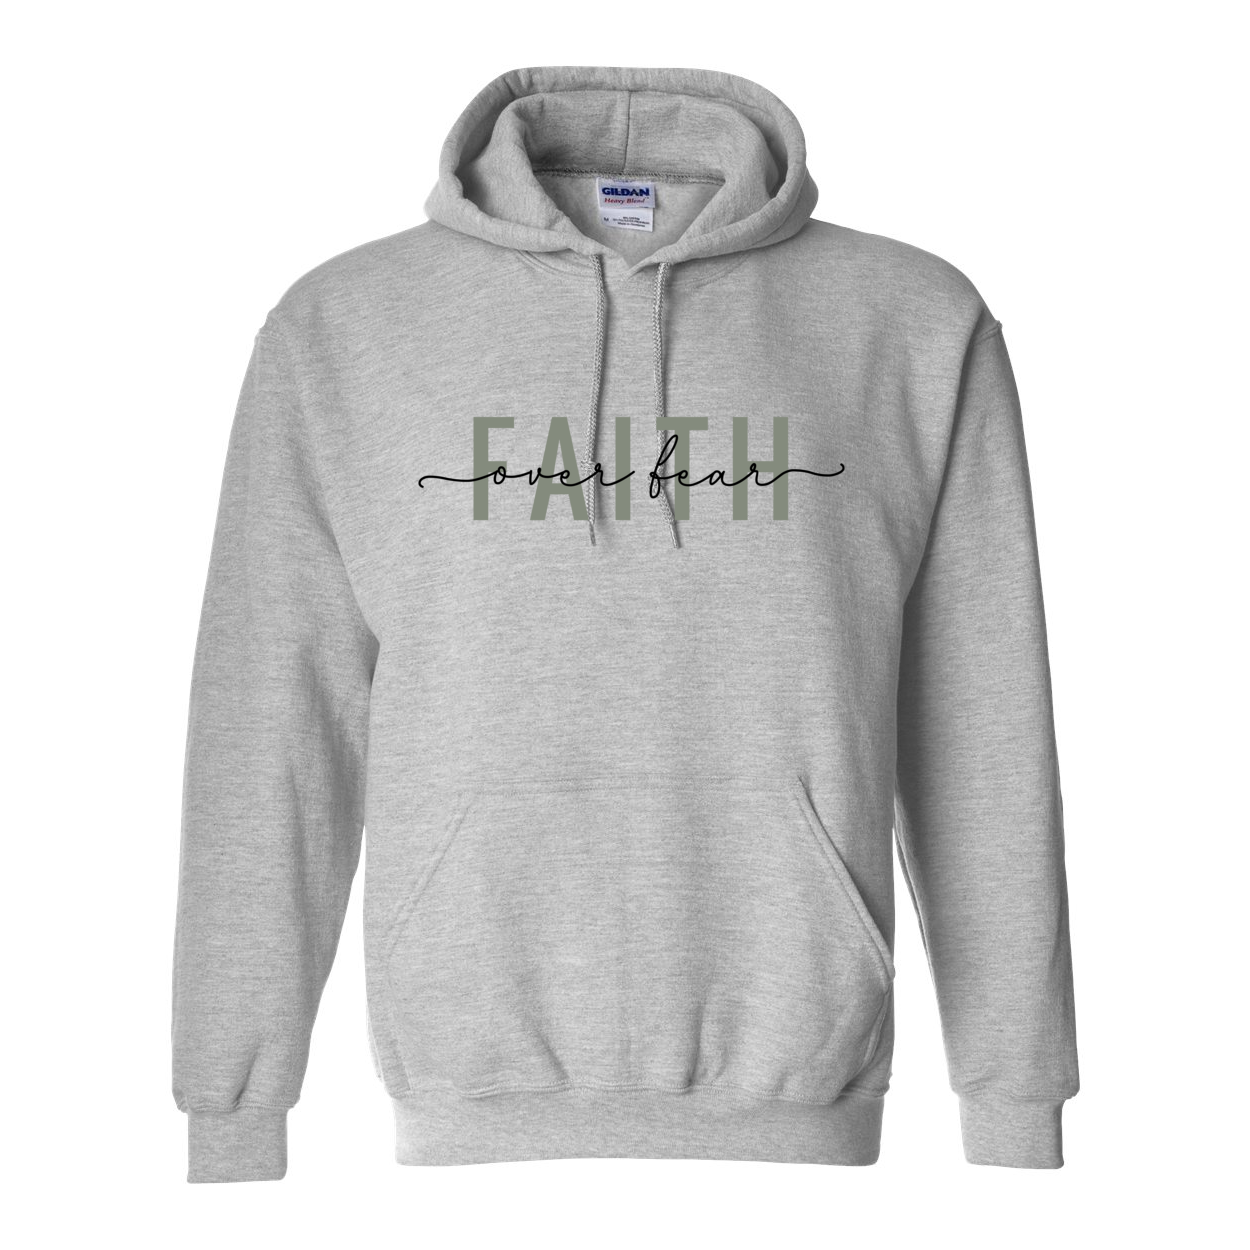 Faith Over Fear Hooded Sweatshirt